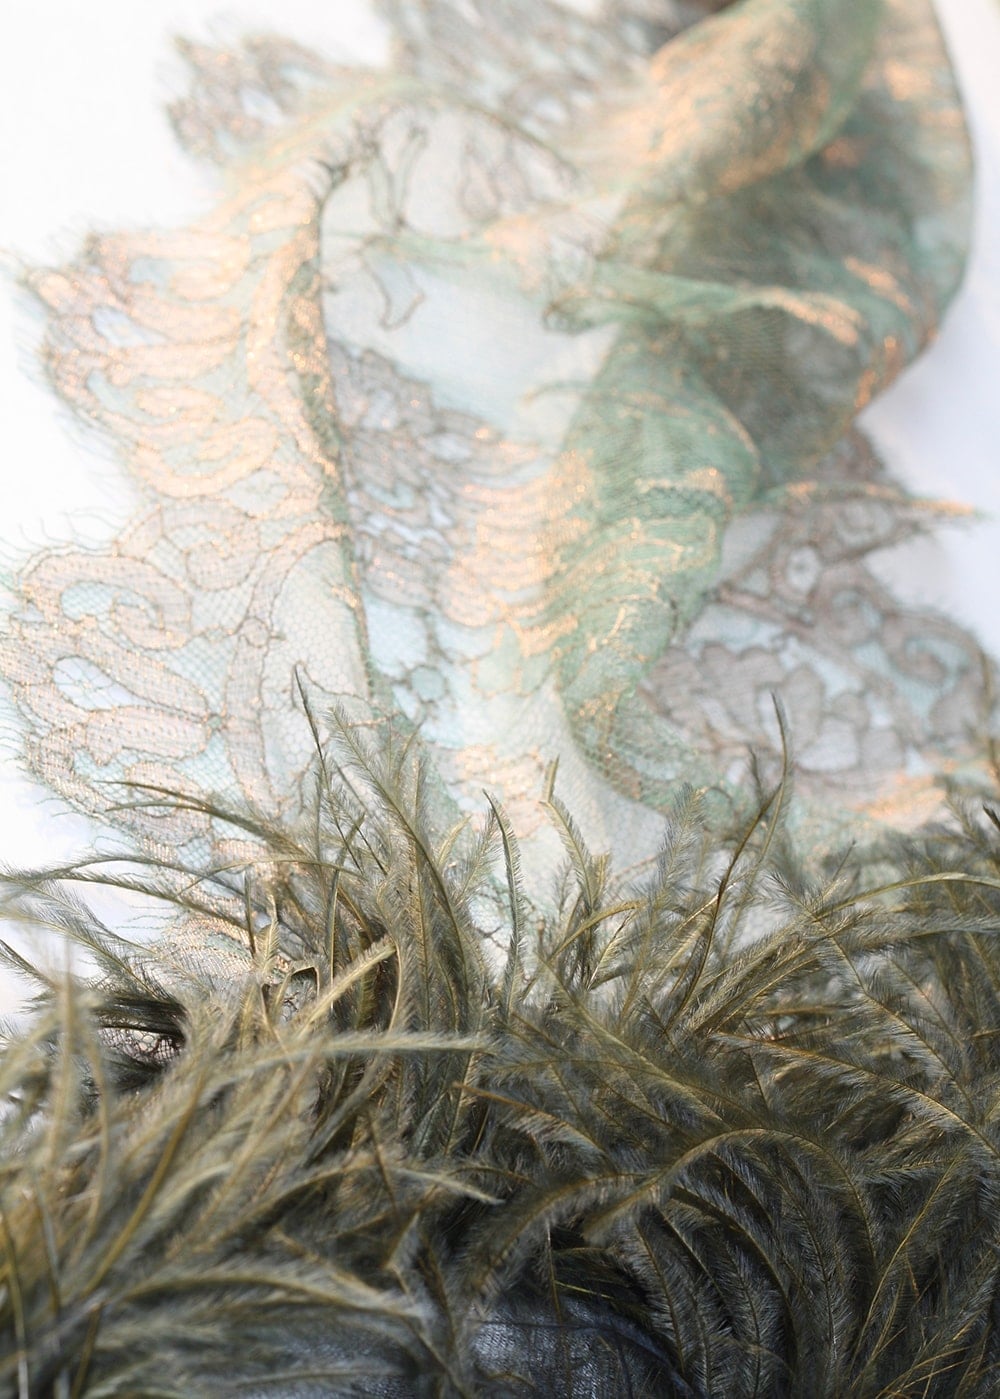 蕾絲兩端裝飾了鴕鳥羽毛的華麗絲巾。